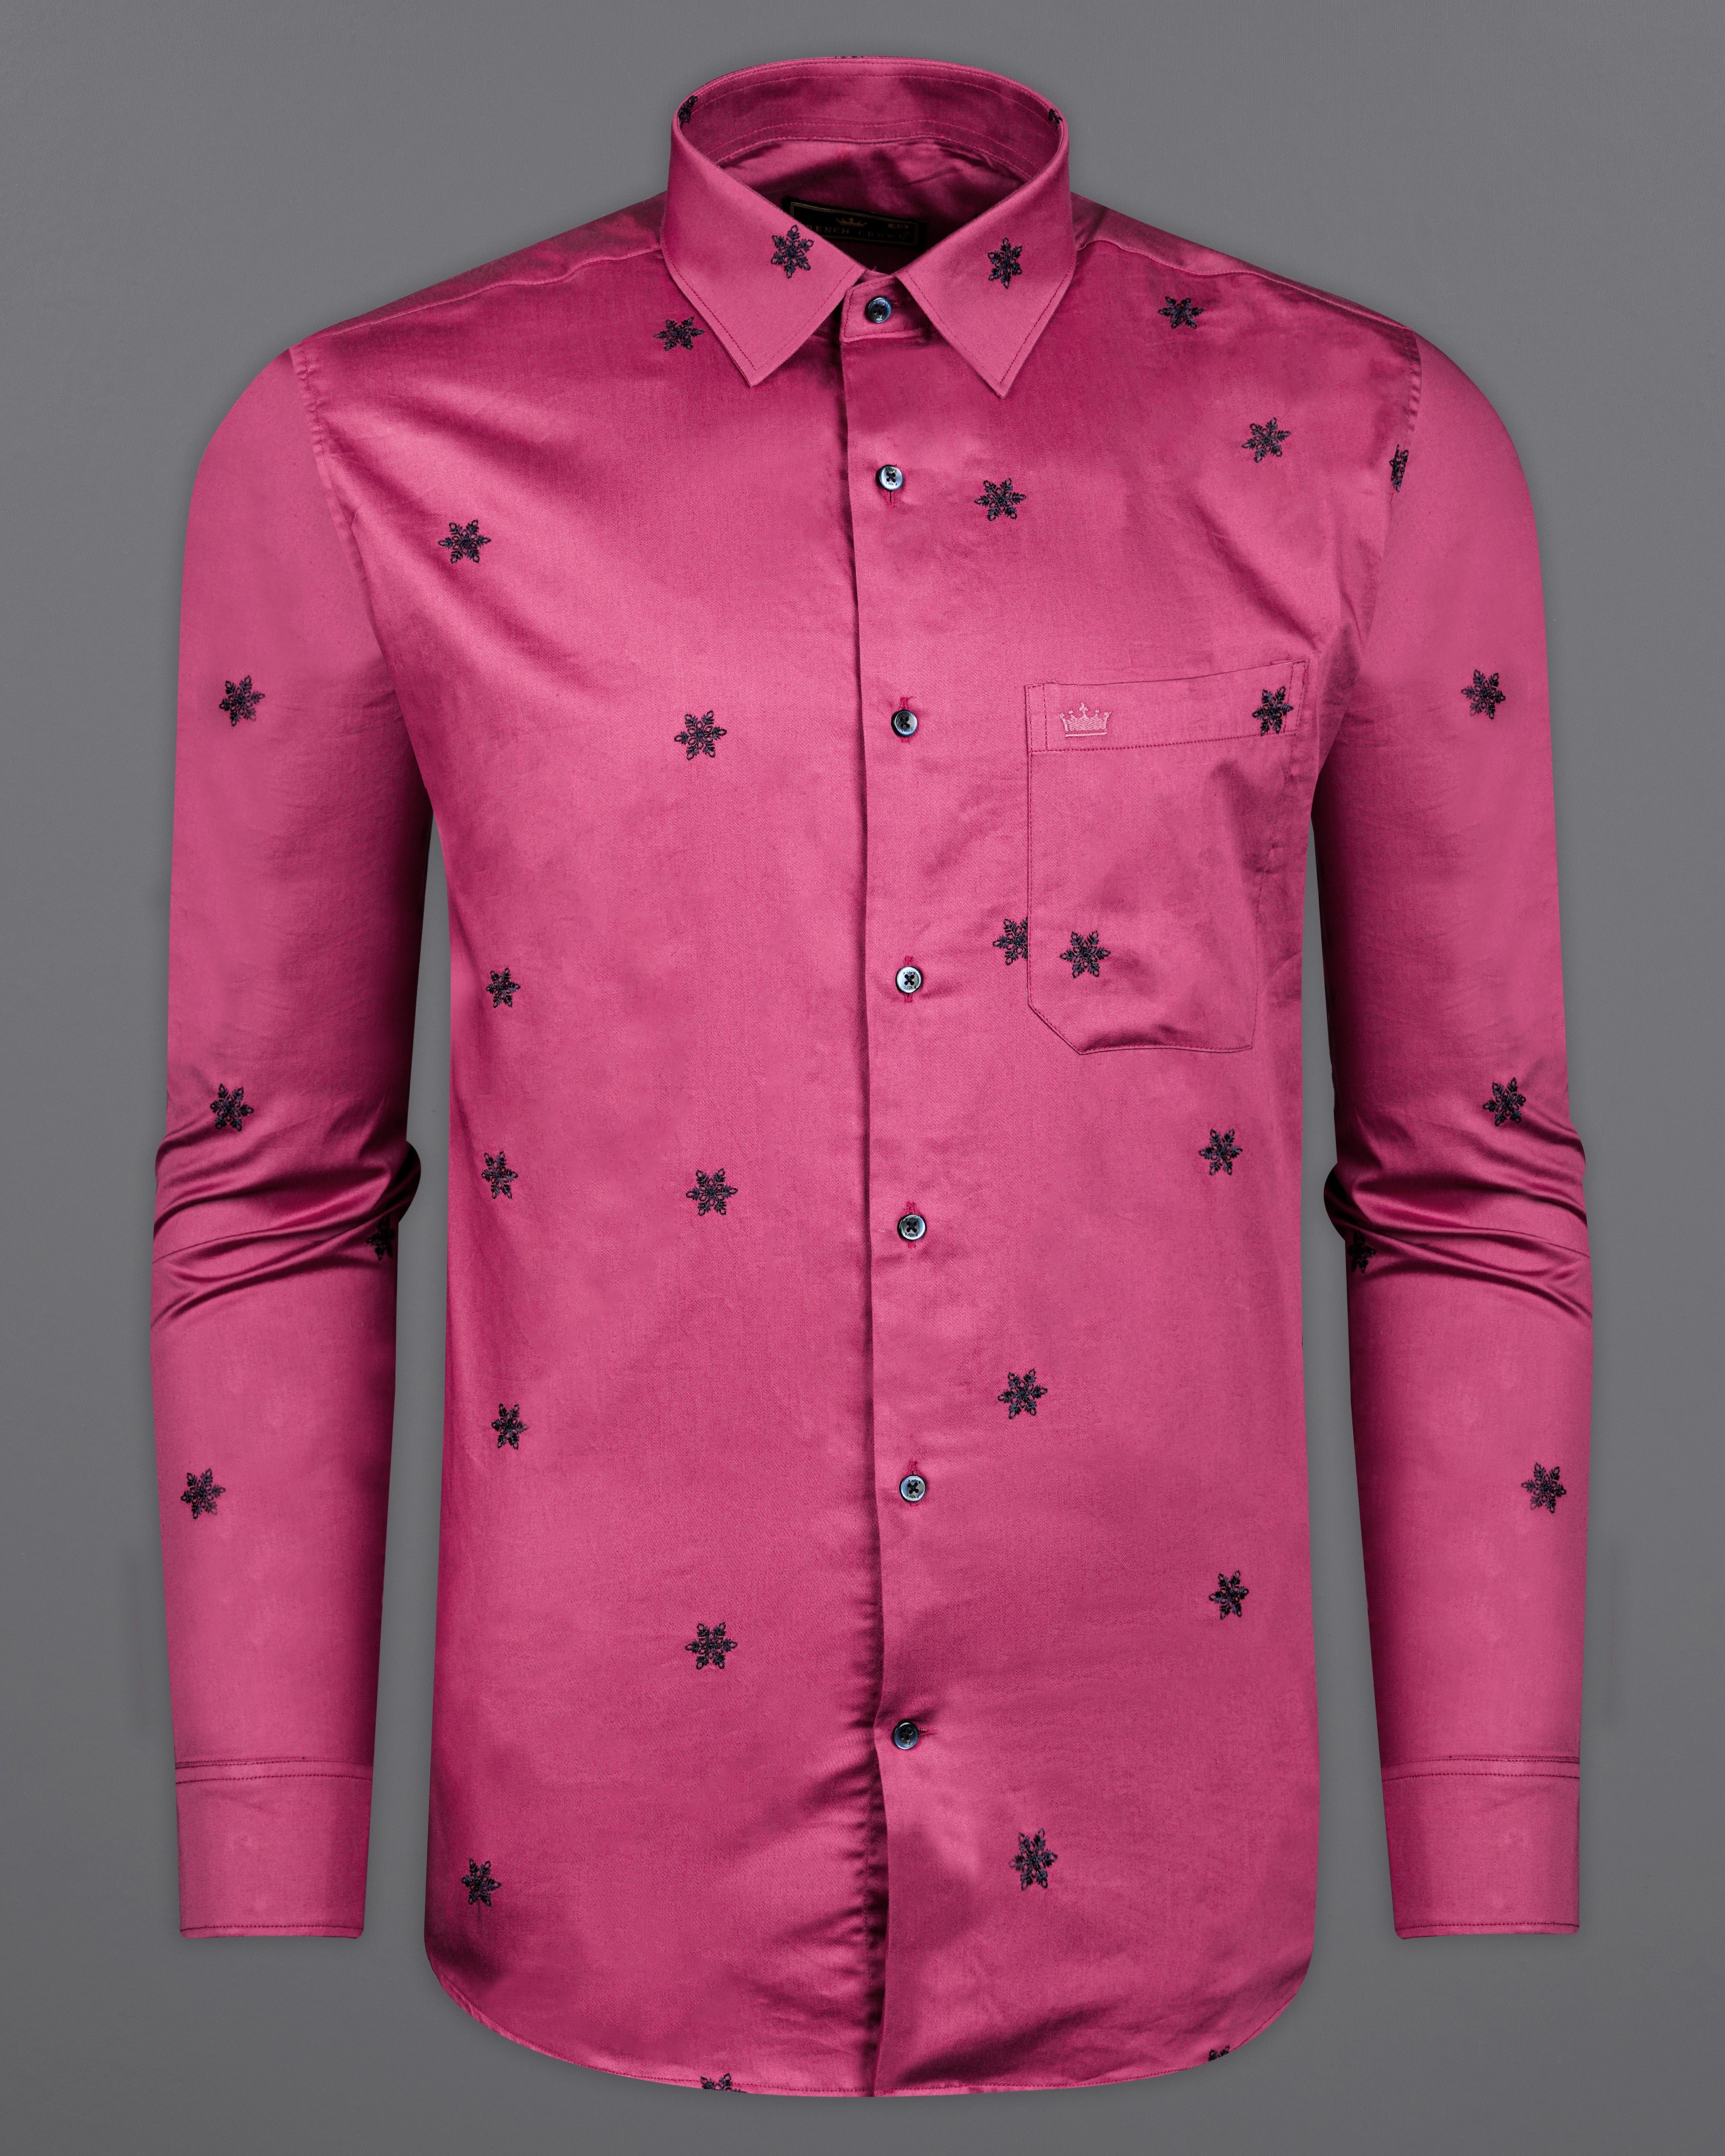 Cabaret Pink with Black Embroidered Super Soft Premium Cotton Shirt 9857-BLK-38, 9857-BLK-H-38, 9857-BLK-39, 9857-BLK-H-39, 9857-BLK-40, 9857-BLK-H-40, 9857-BLK-42, 9857-BLK-H-42, 9857-BLK-44, 9857-BLK-H-44, 9857-BLK-46, 9857-BLK-H-46, 9857-BLK-48, 9857-BLK-H-48, 9857-BLK-50, 9857-BLK-H-50, 9857-BLK-52, 9857-BLK-H-52